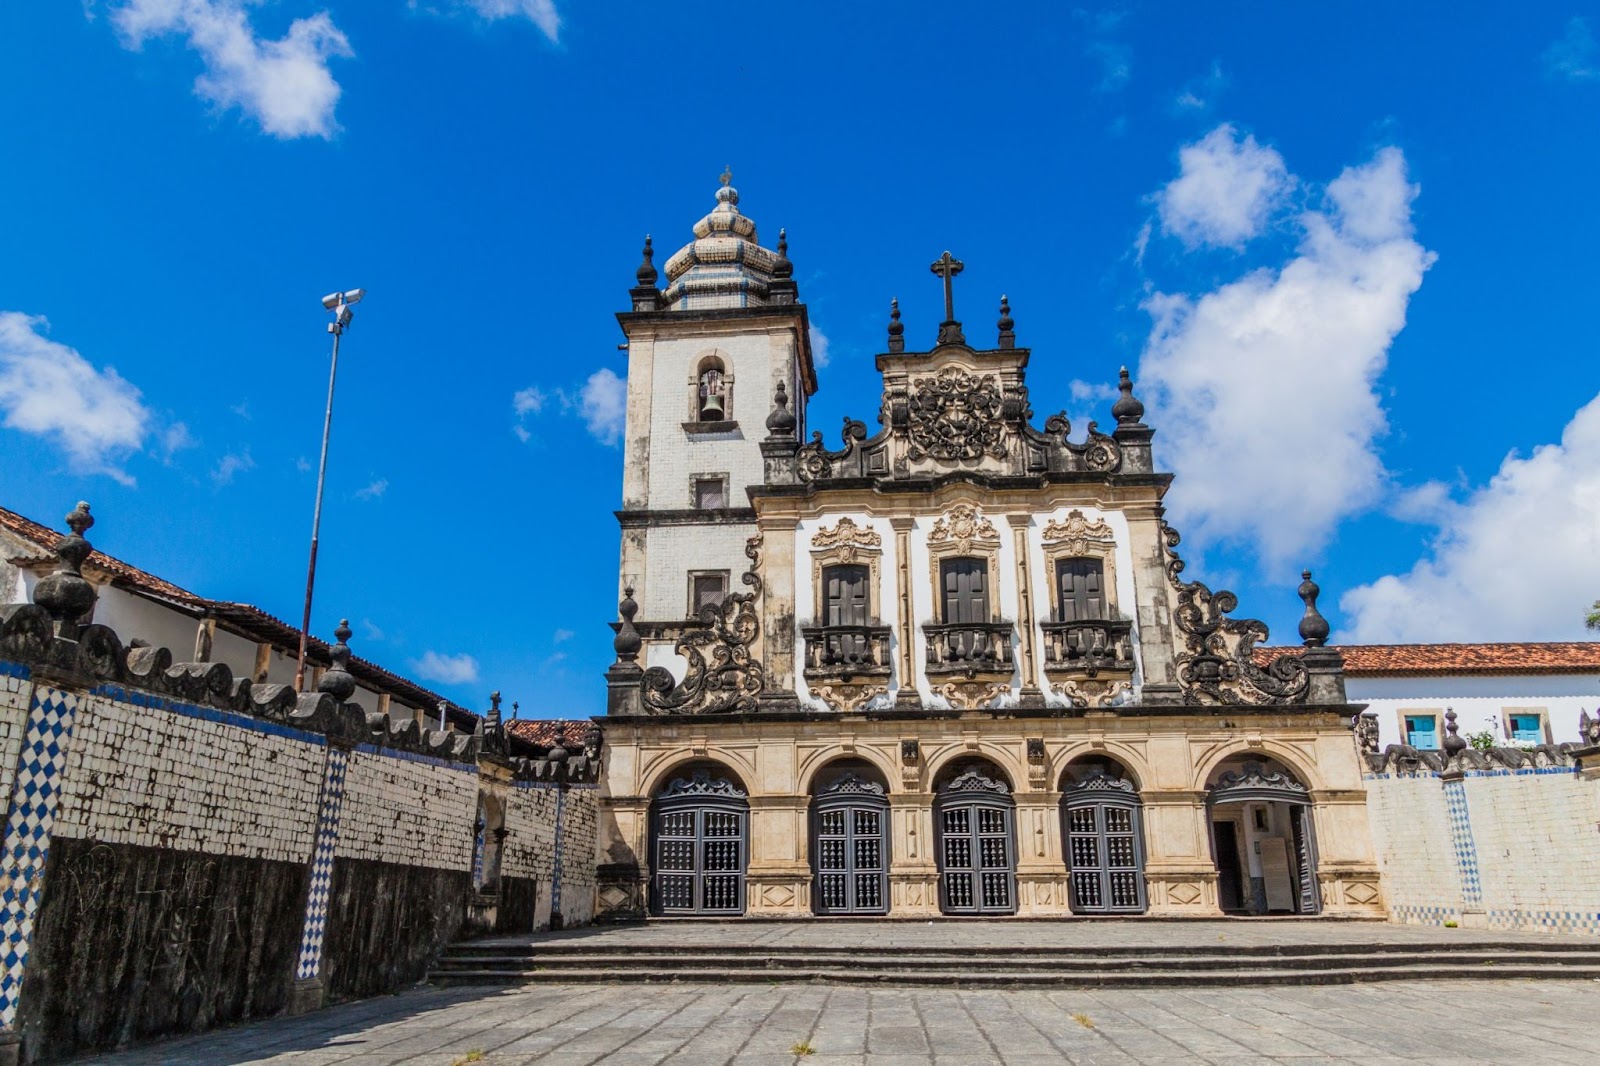 Antiga igreja de estilo barroco que fica no Centro Cultural São Francisco. O templo tem uma fachada ricamente adornada com detalhes em pedra e uma torre com sino